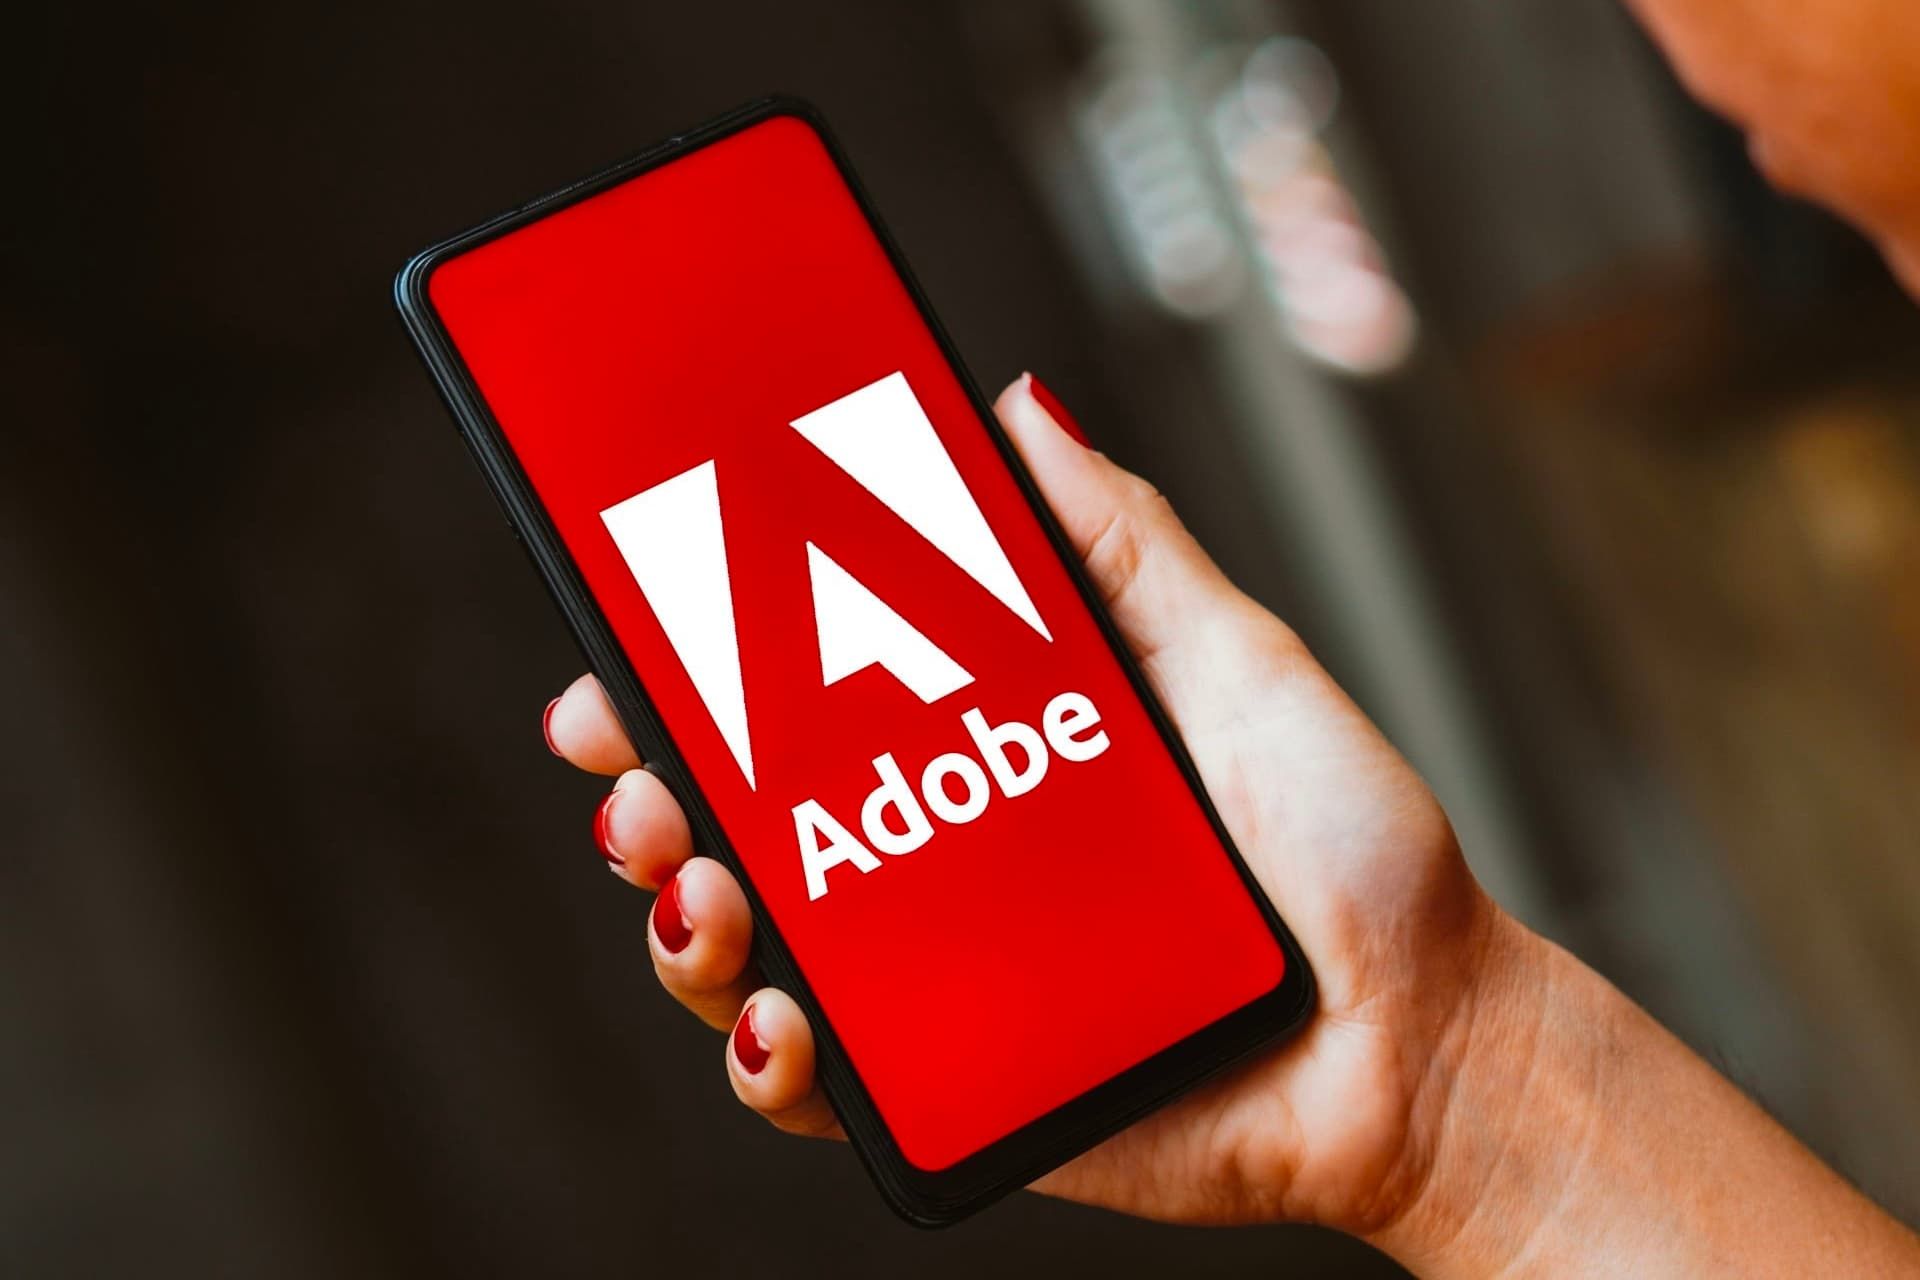 لوگو ادوبی / Adobe در داخل موبایل در دست راست یک زن